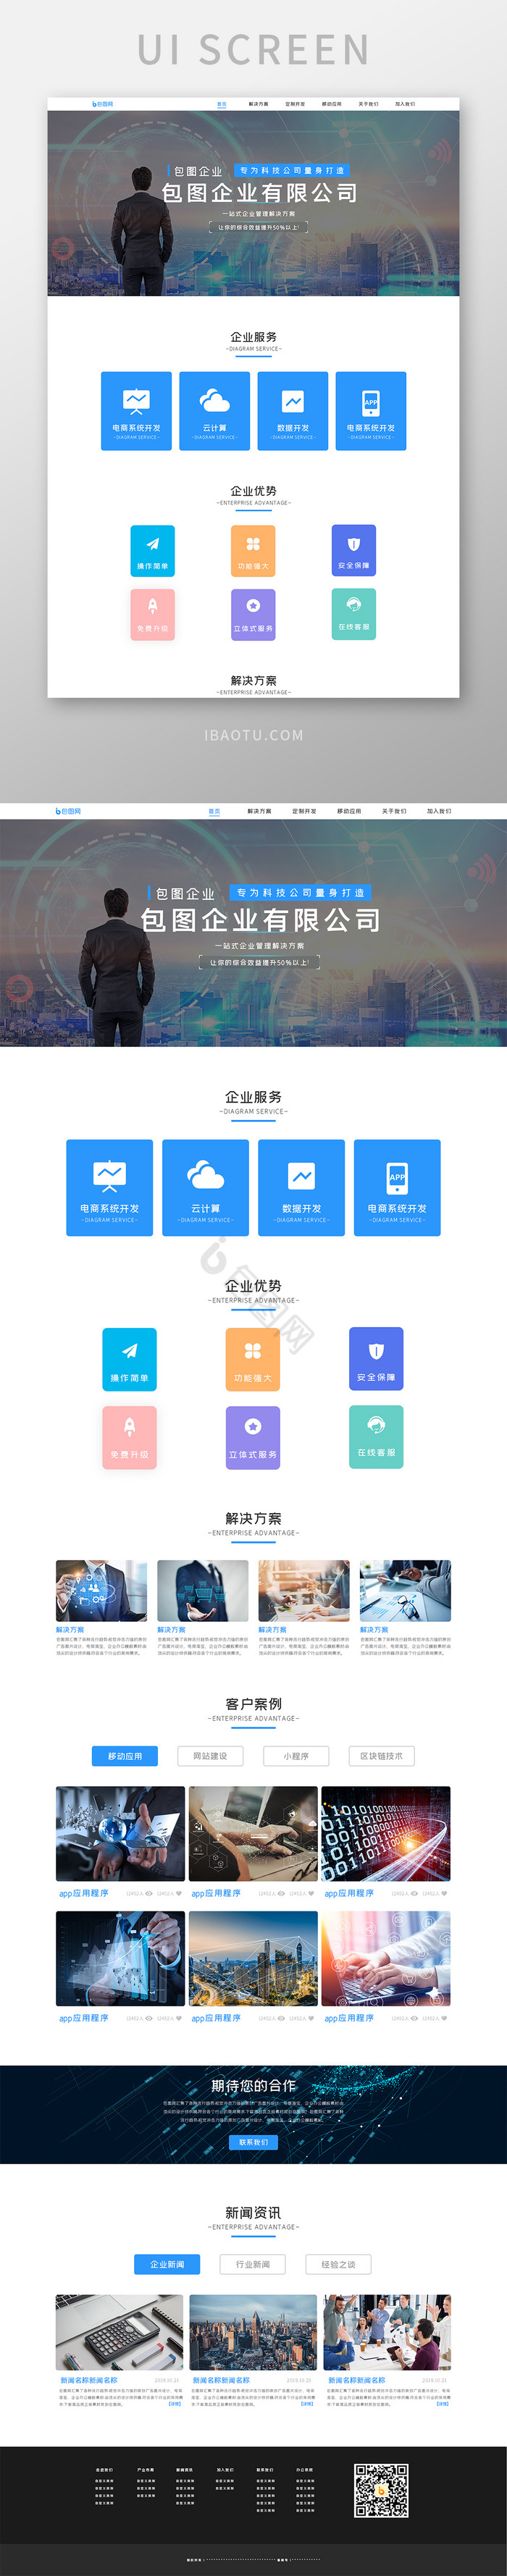 蓝色商务科技ui官网首页界面设计互联网